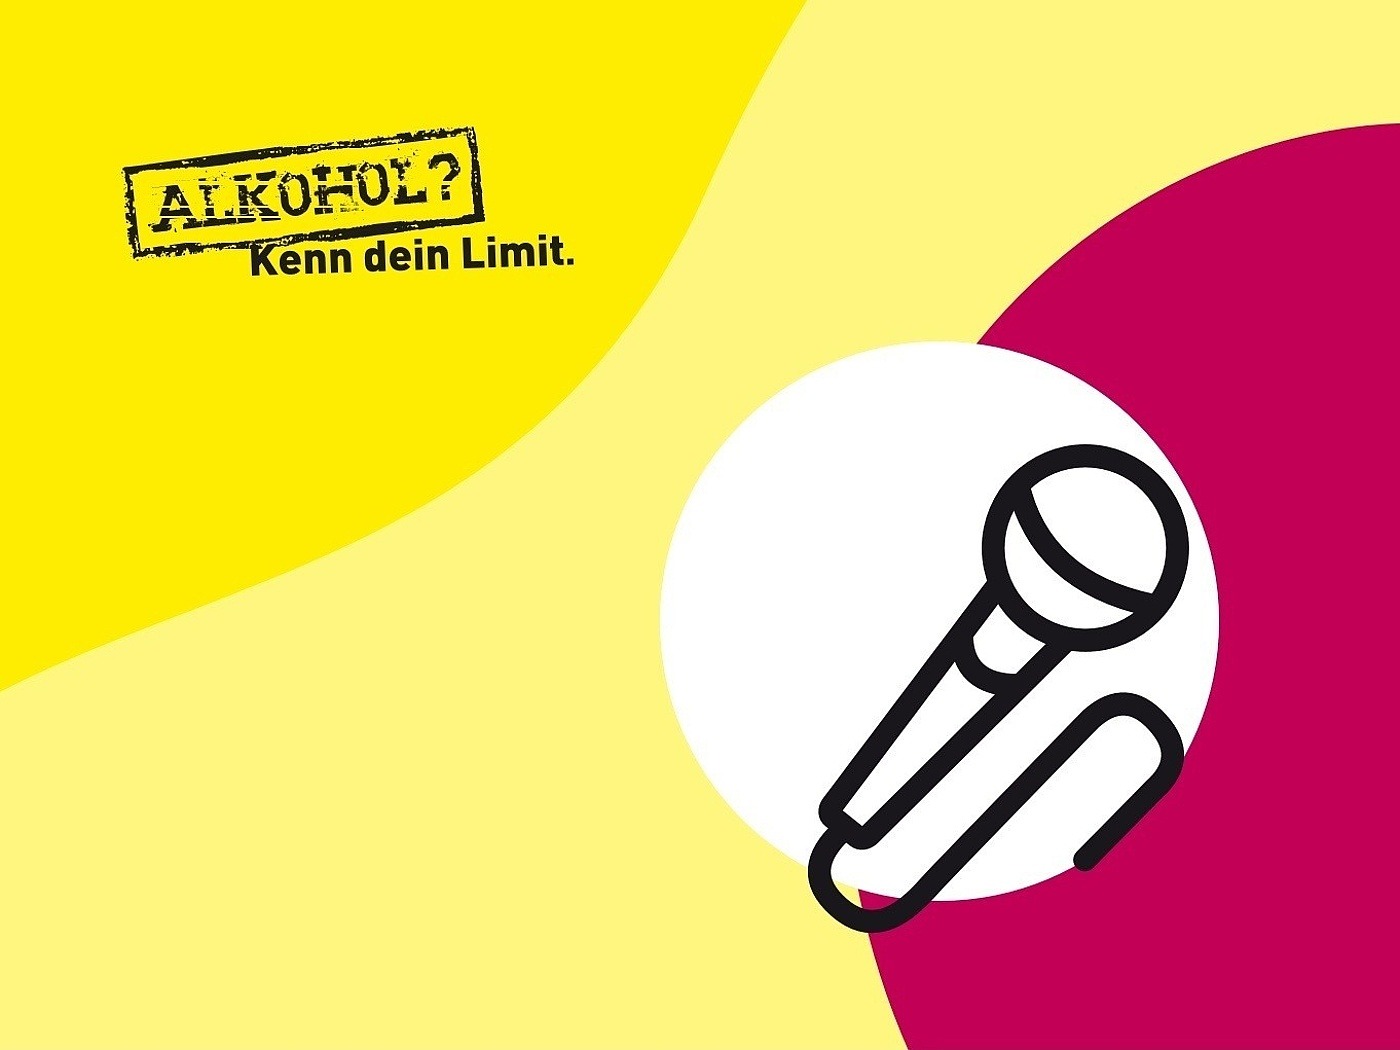 In einem weißen Kreis ist ein Mikrofon. Der Hintergrund ist gelb-pink mit dem Logo "Alkohol? Kenn dein Limit."